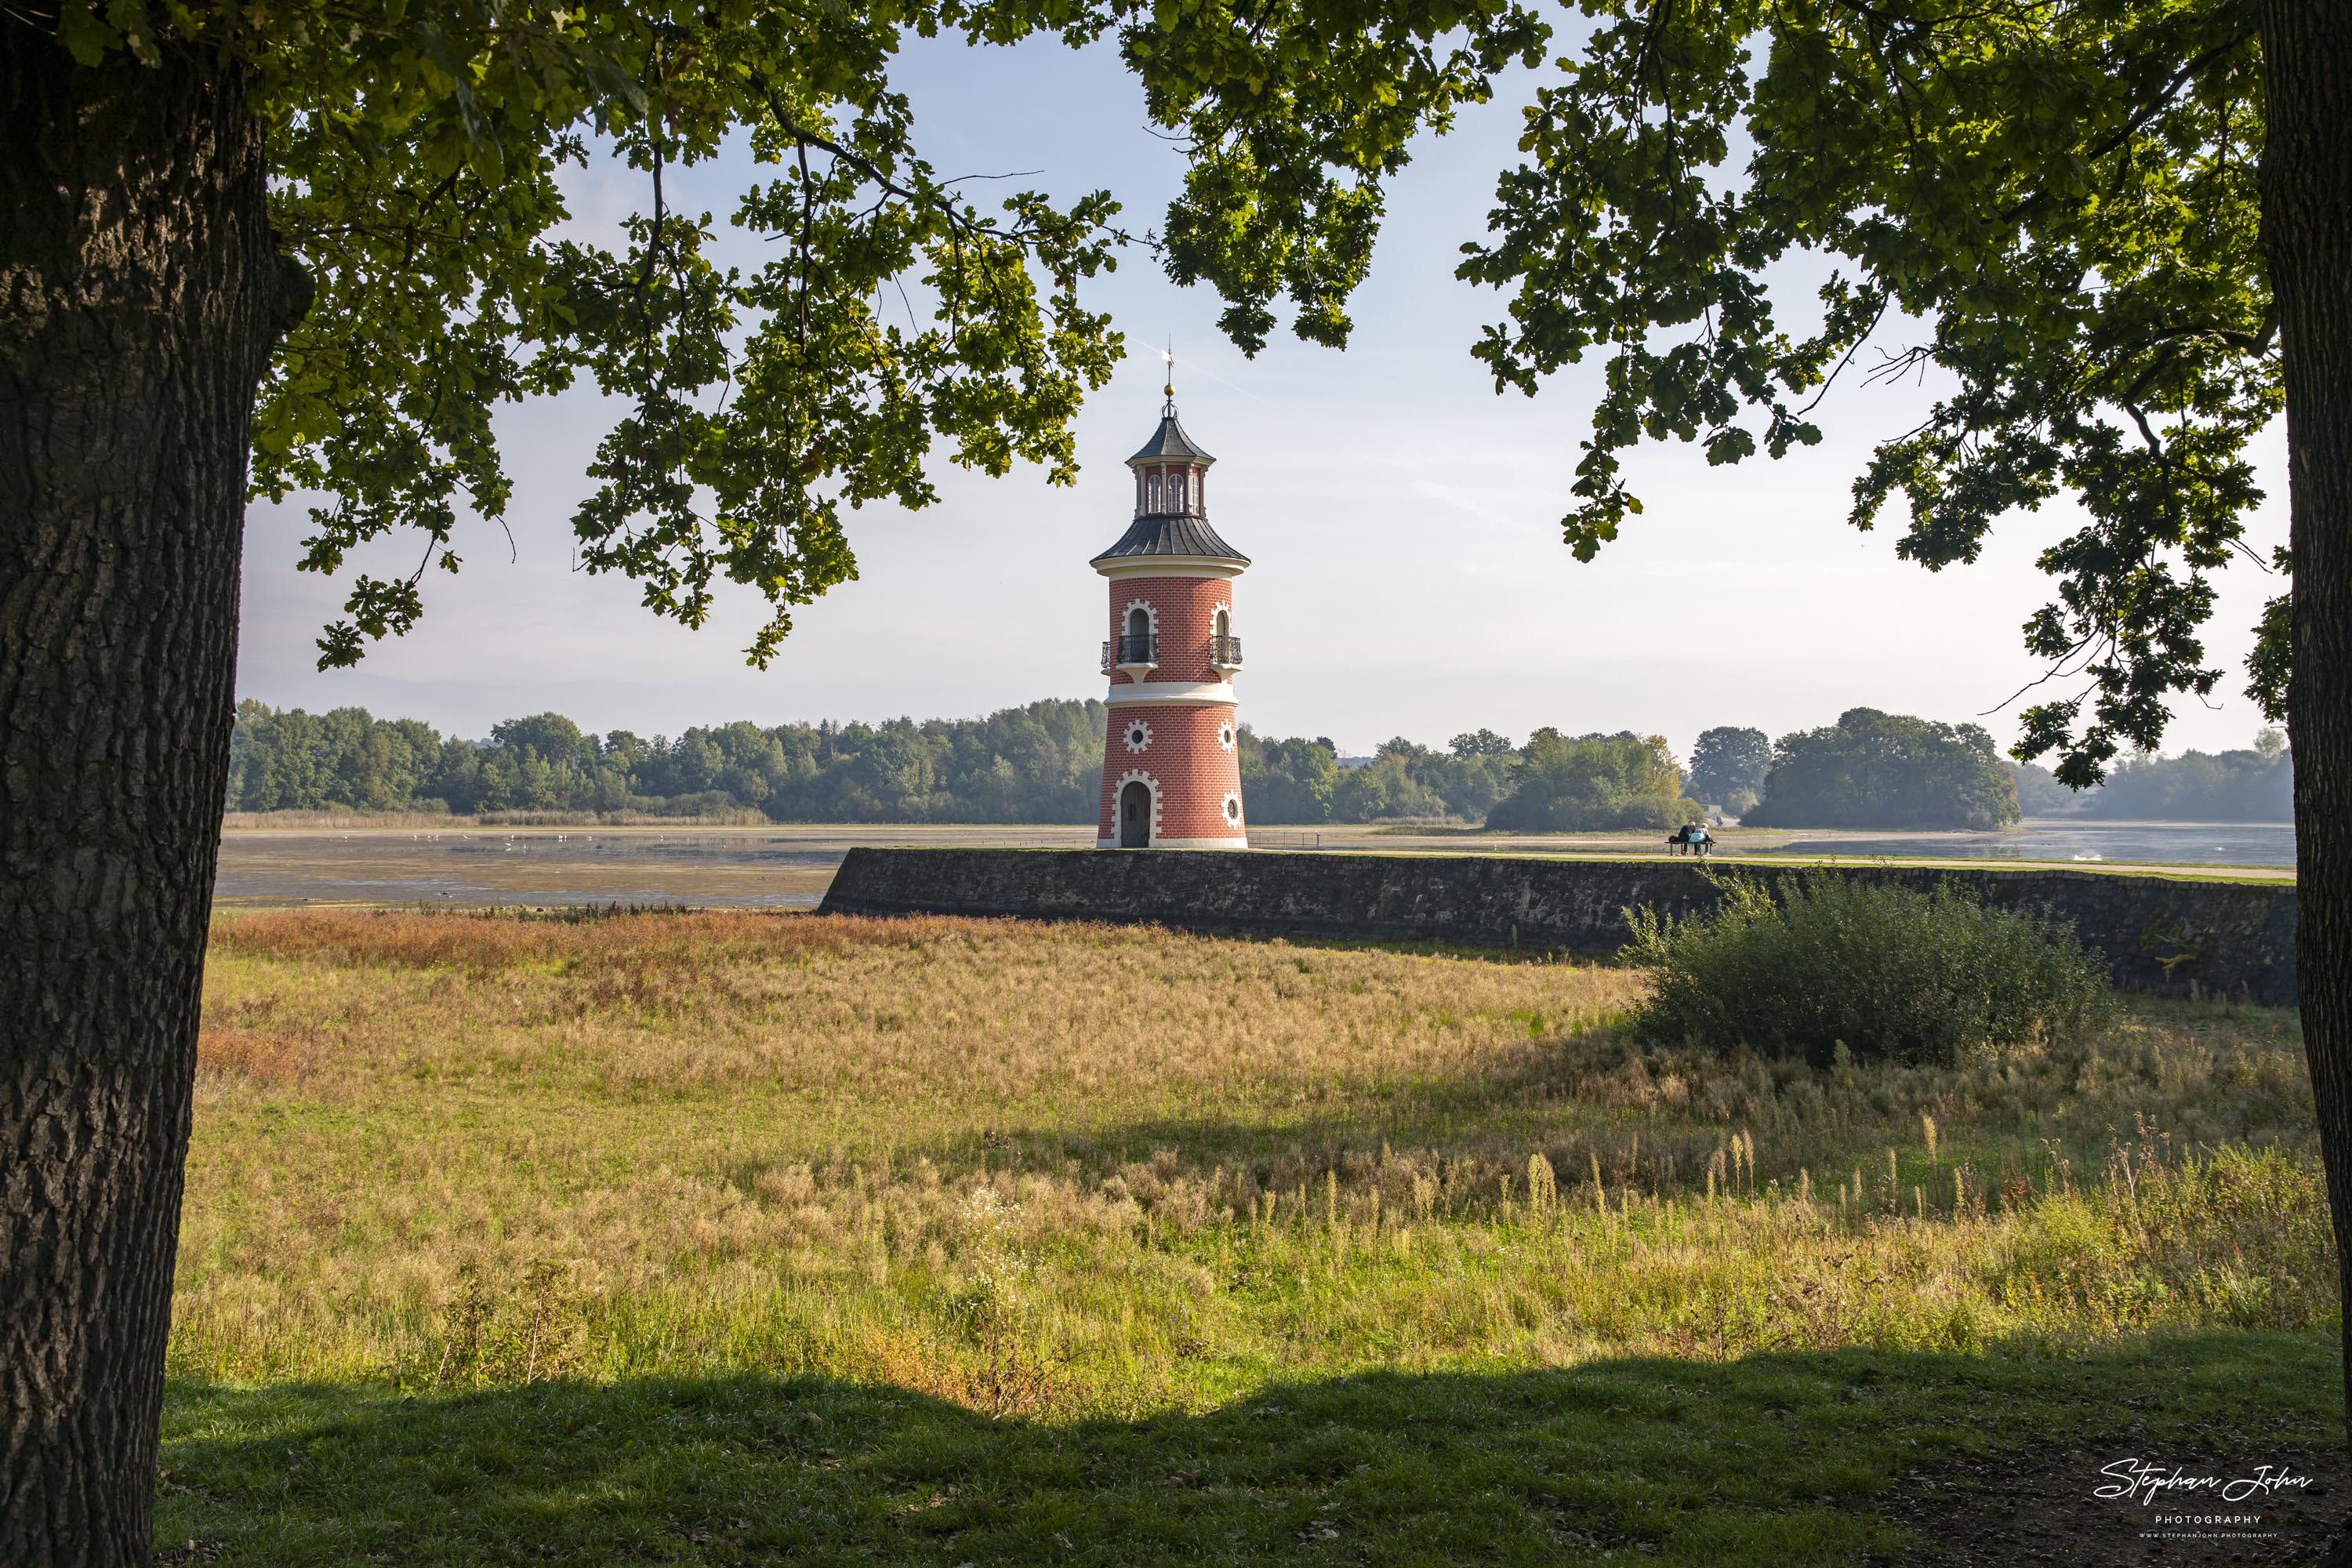 <p>Der Leuchtturm in Moritzburg ist ein Binnenleuchtturm in Sachsen. Der Staffagebau (Folly) entstand im späten 18. Jahrhundert als Teil einer Kulisse für nachgestellte Seeschlachten (Naumachie). Er ist der einzige für diesen Zweck gebaute Leuchtturm in Deutschland und gleichzeitig einer der ältesten Binnenleuchttürme der Bundesrepublik. (Wikipedia)</p>